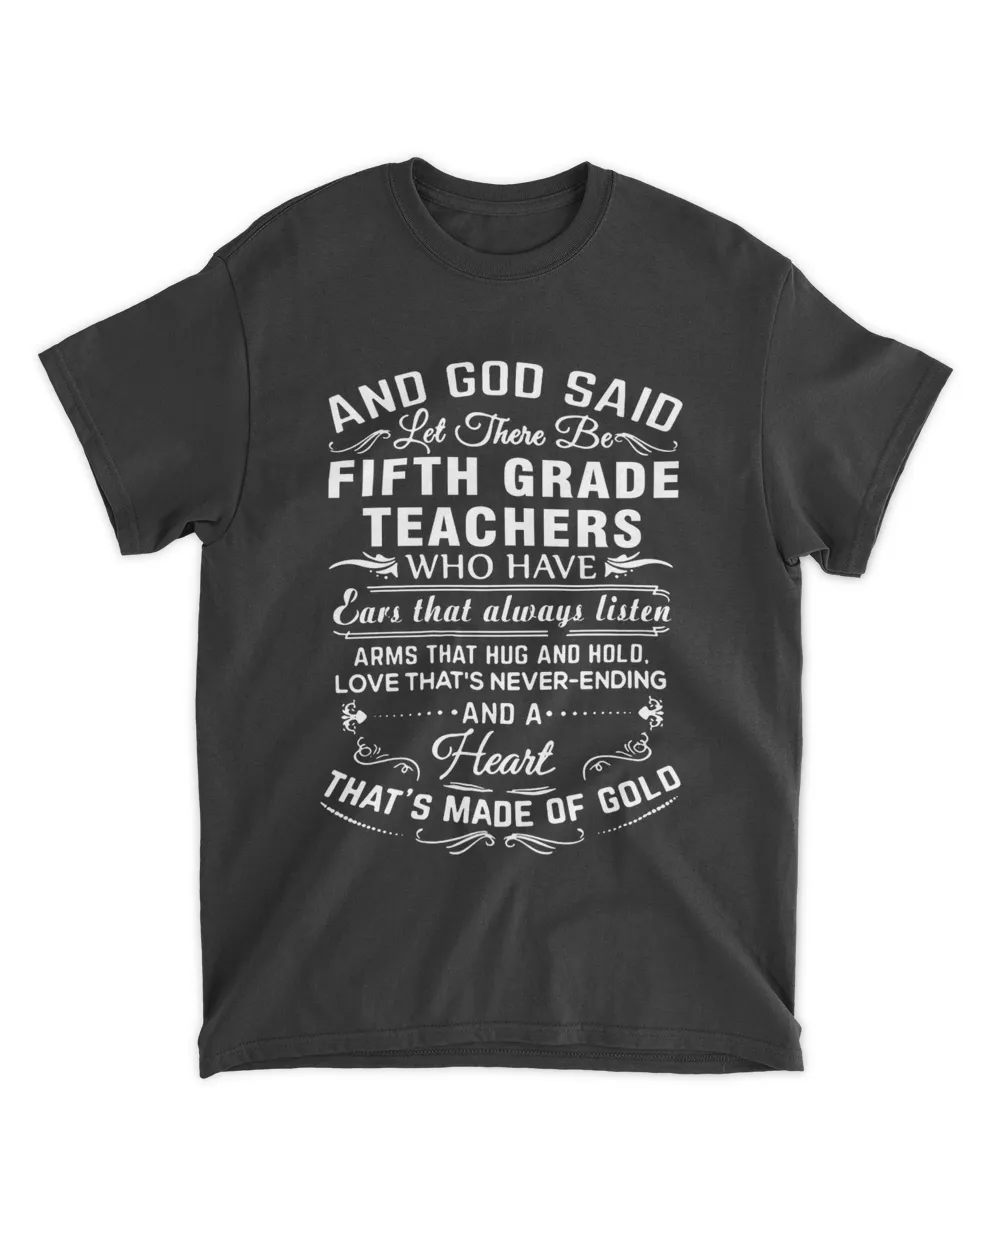 FIFTH GRADE TEACHER